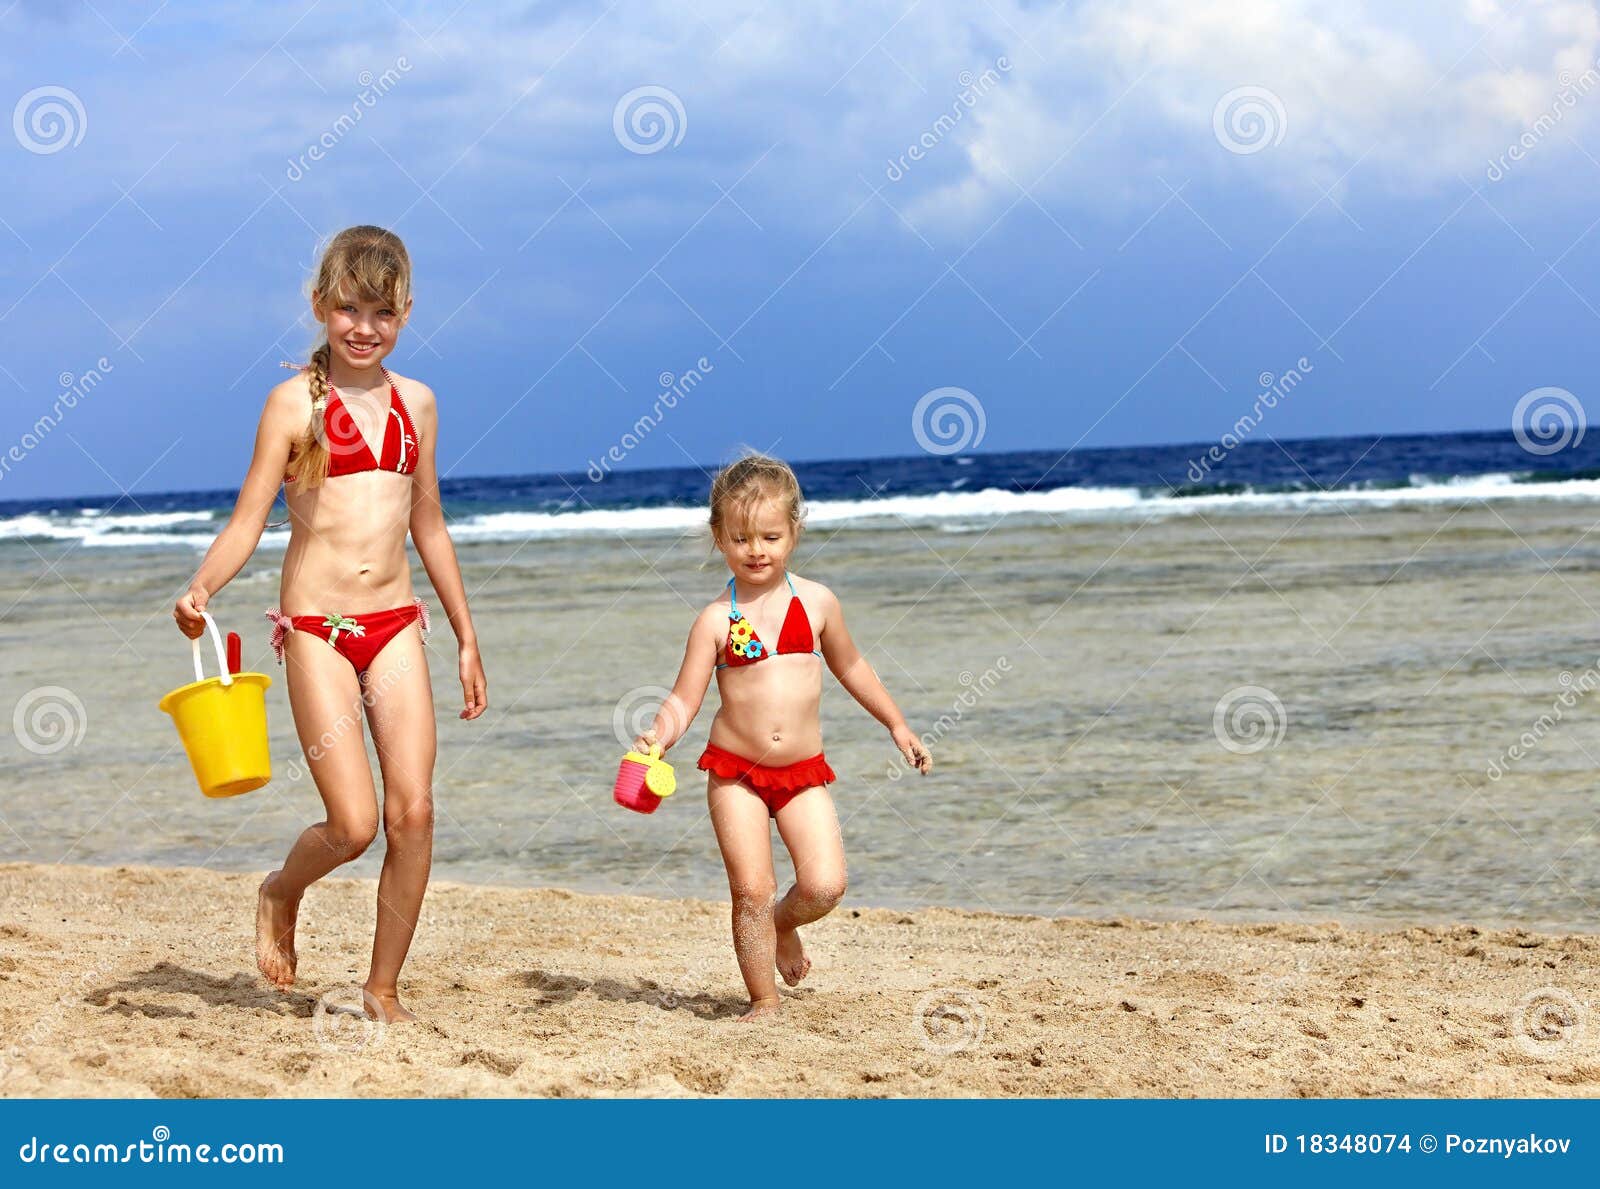 за голыми детьми на пляже фото 16